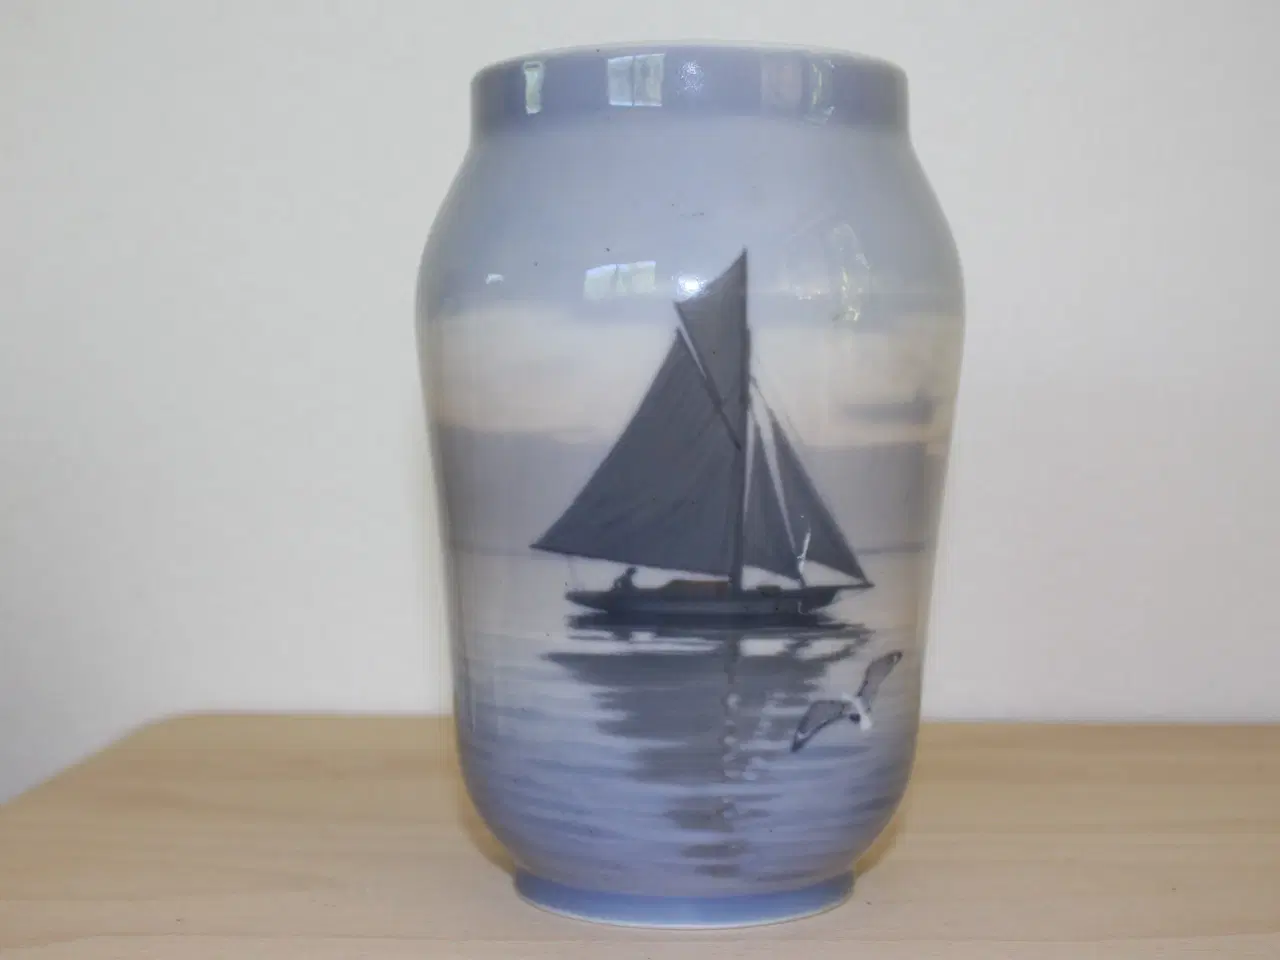 Billede 1 - Vase med sejlskib fra Royal copenhagen